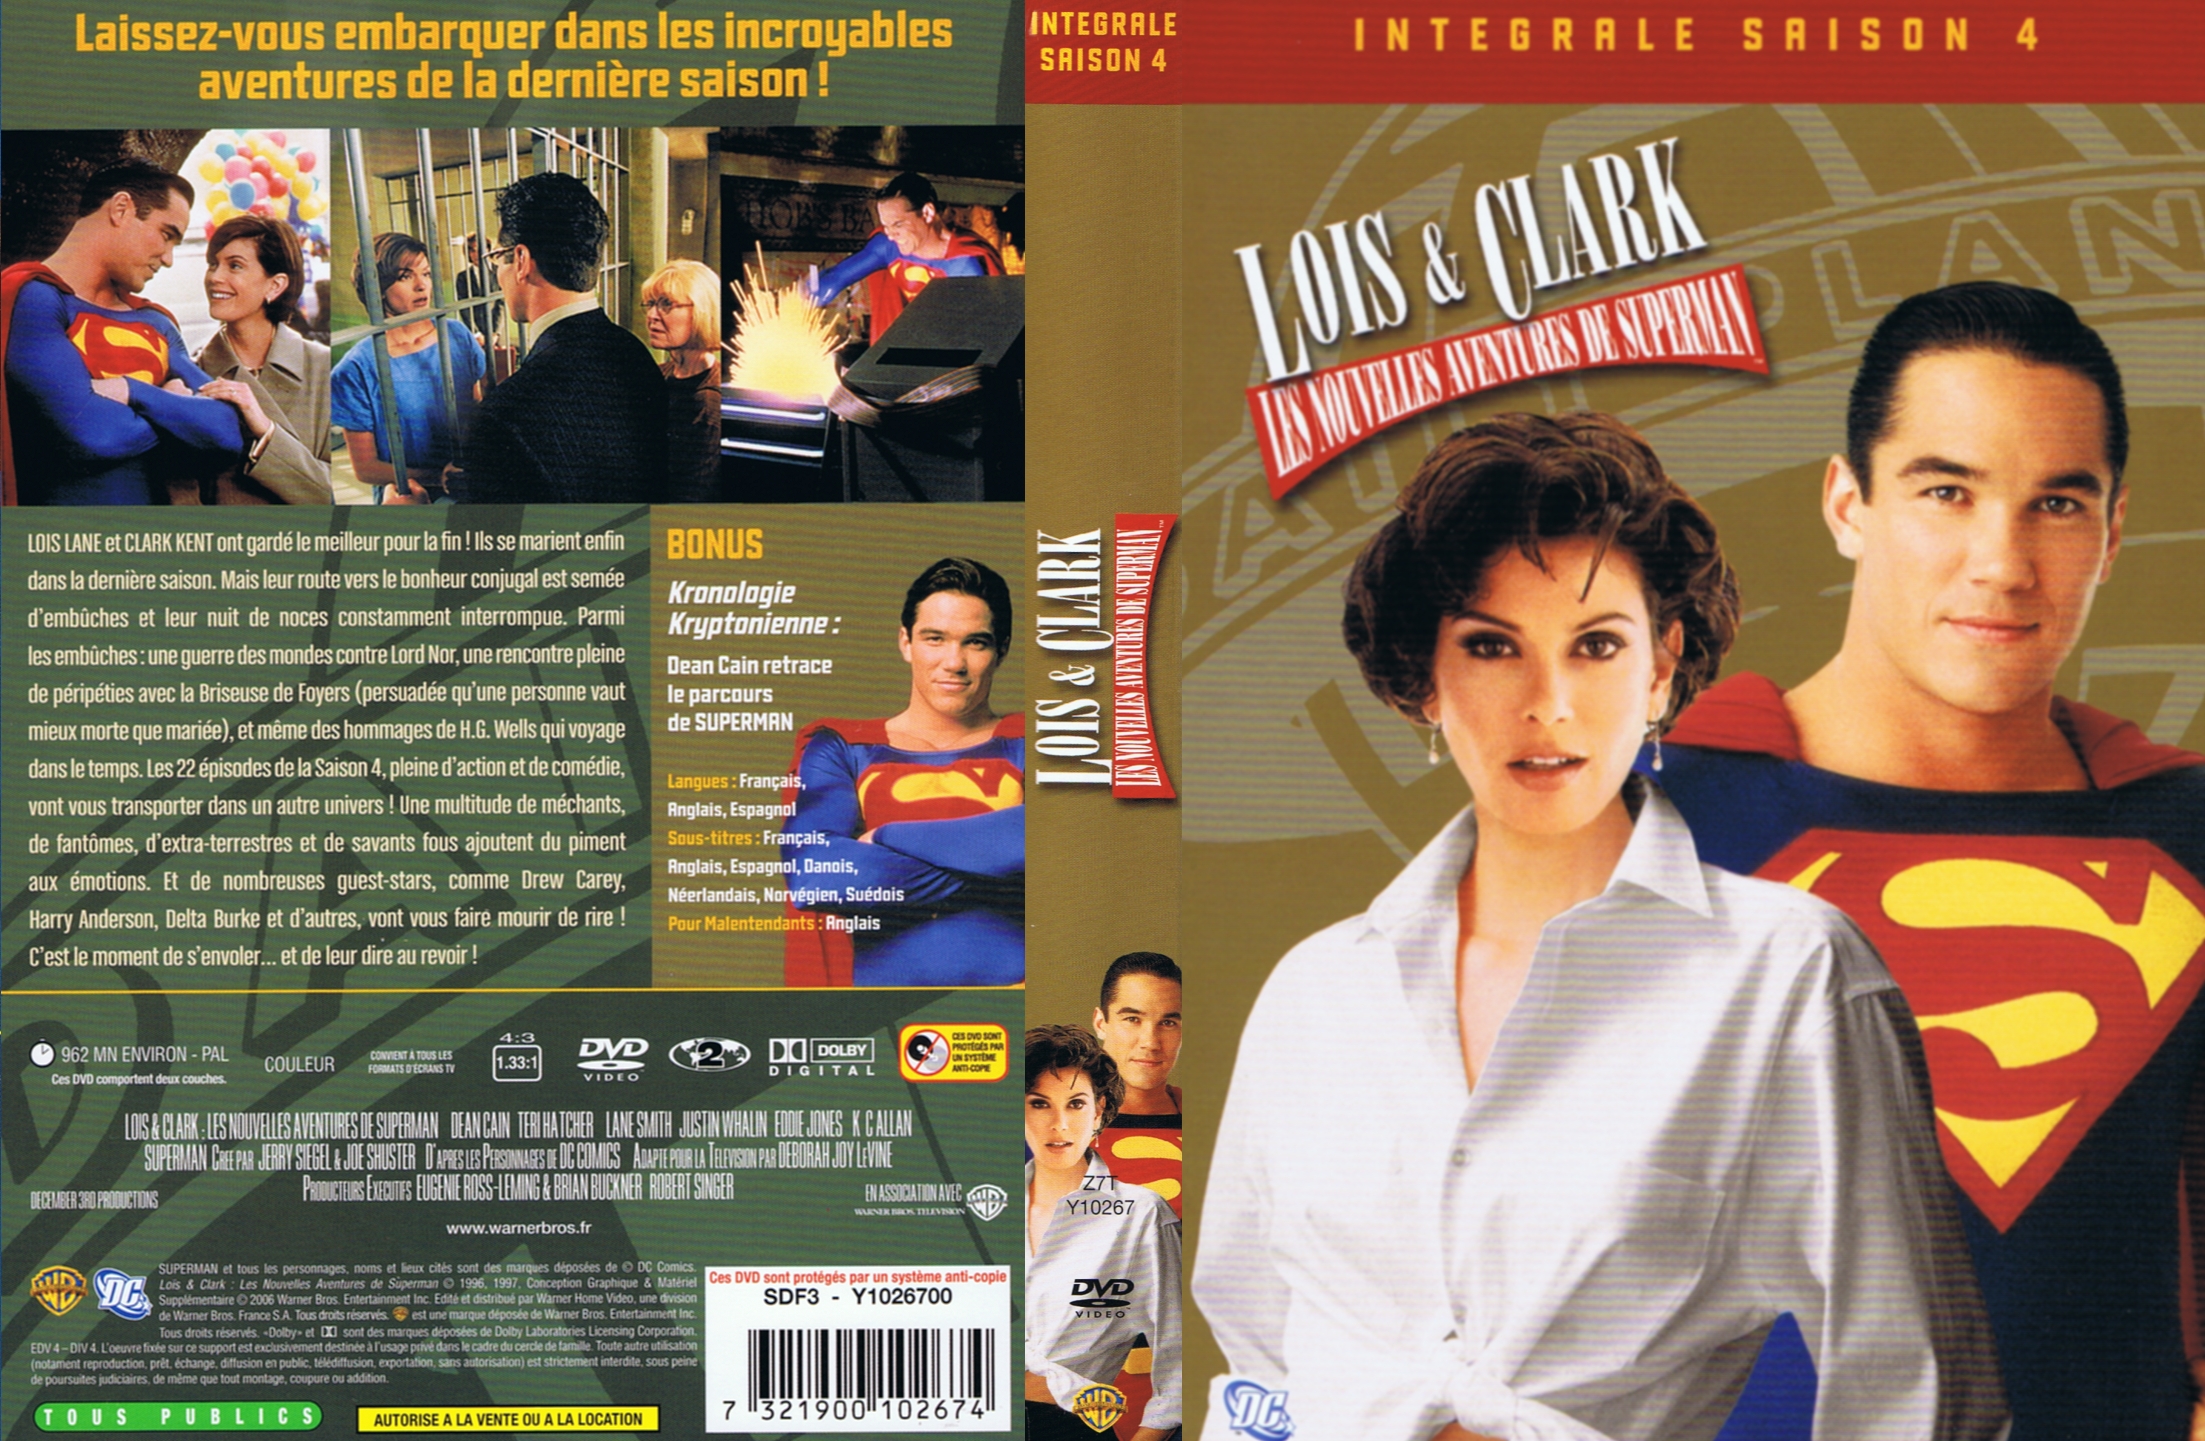 Jaquette DVD Lois et Clark Saison 4 COFFRET